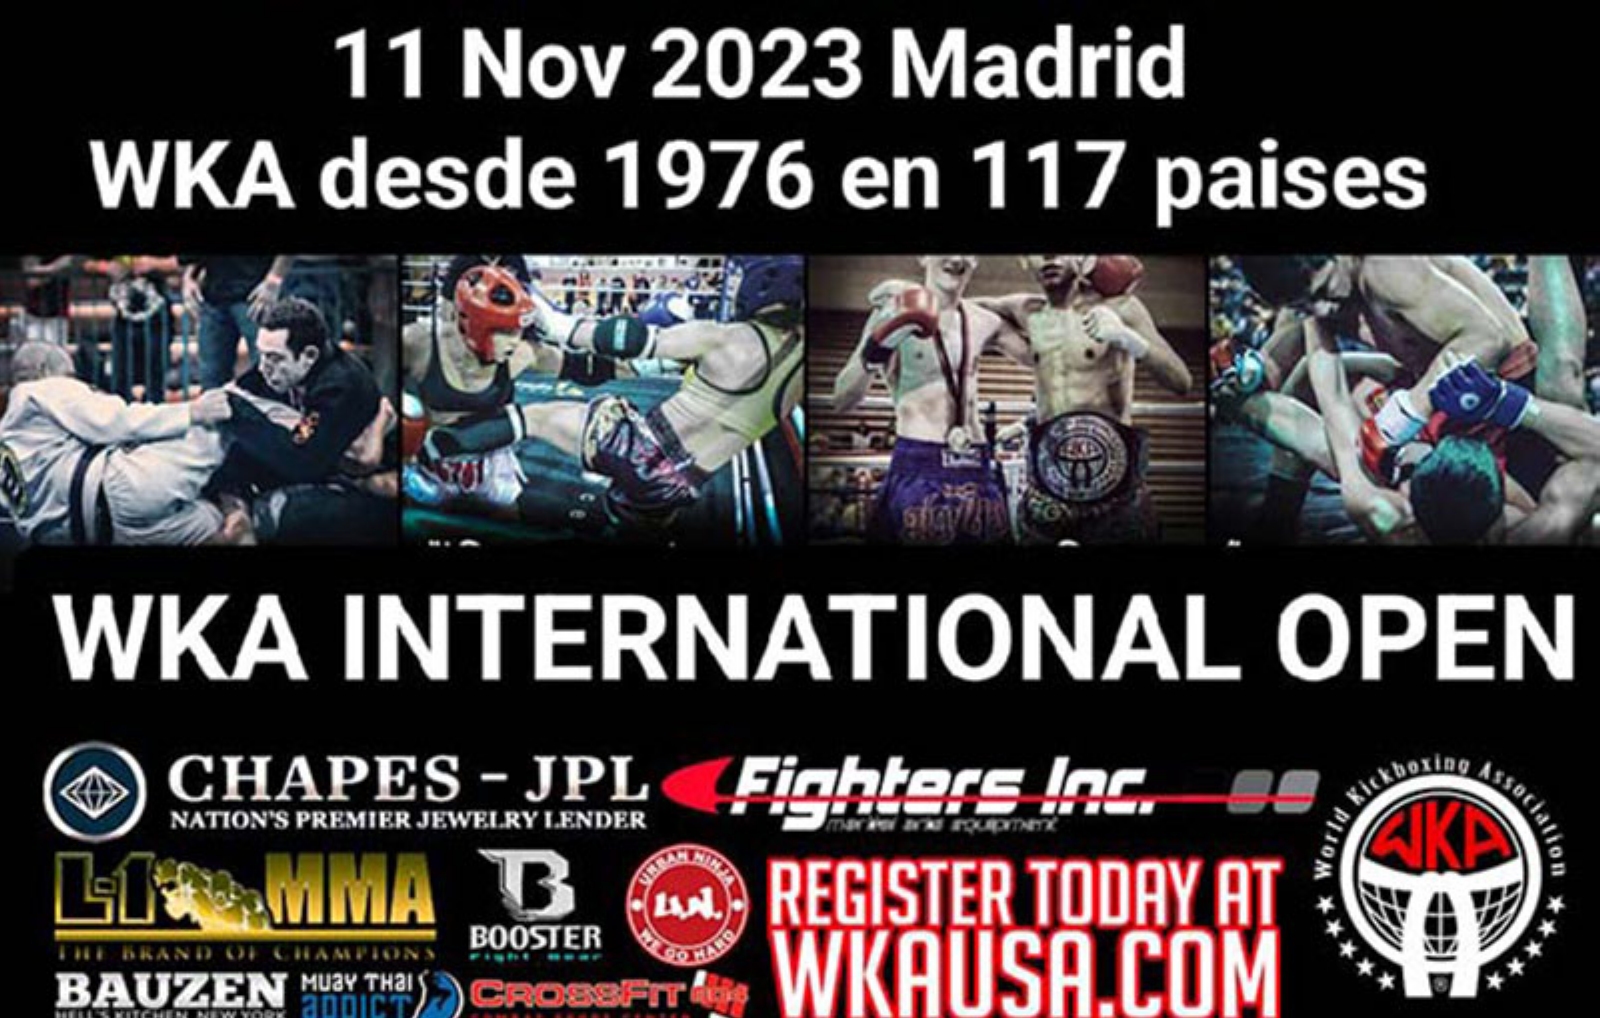 WKA INTERNATIONAL OPEN amateur en Madrid